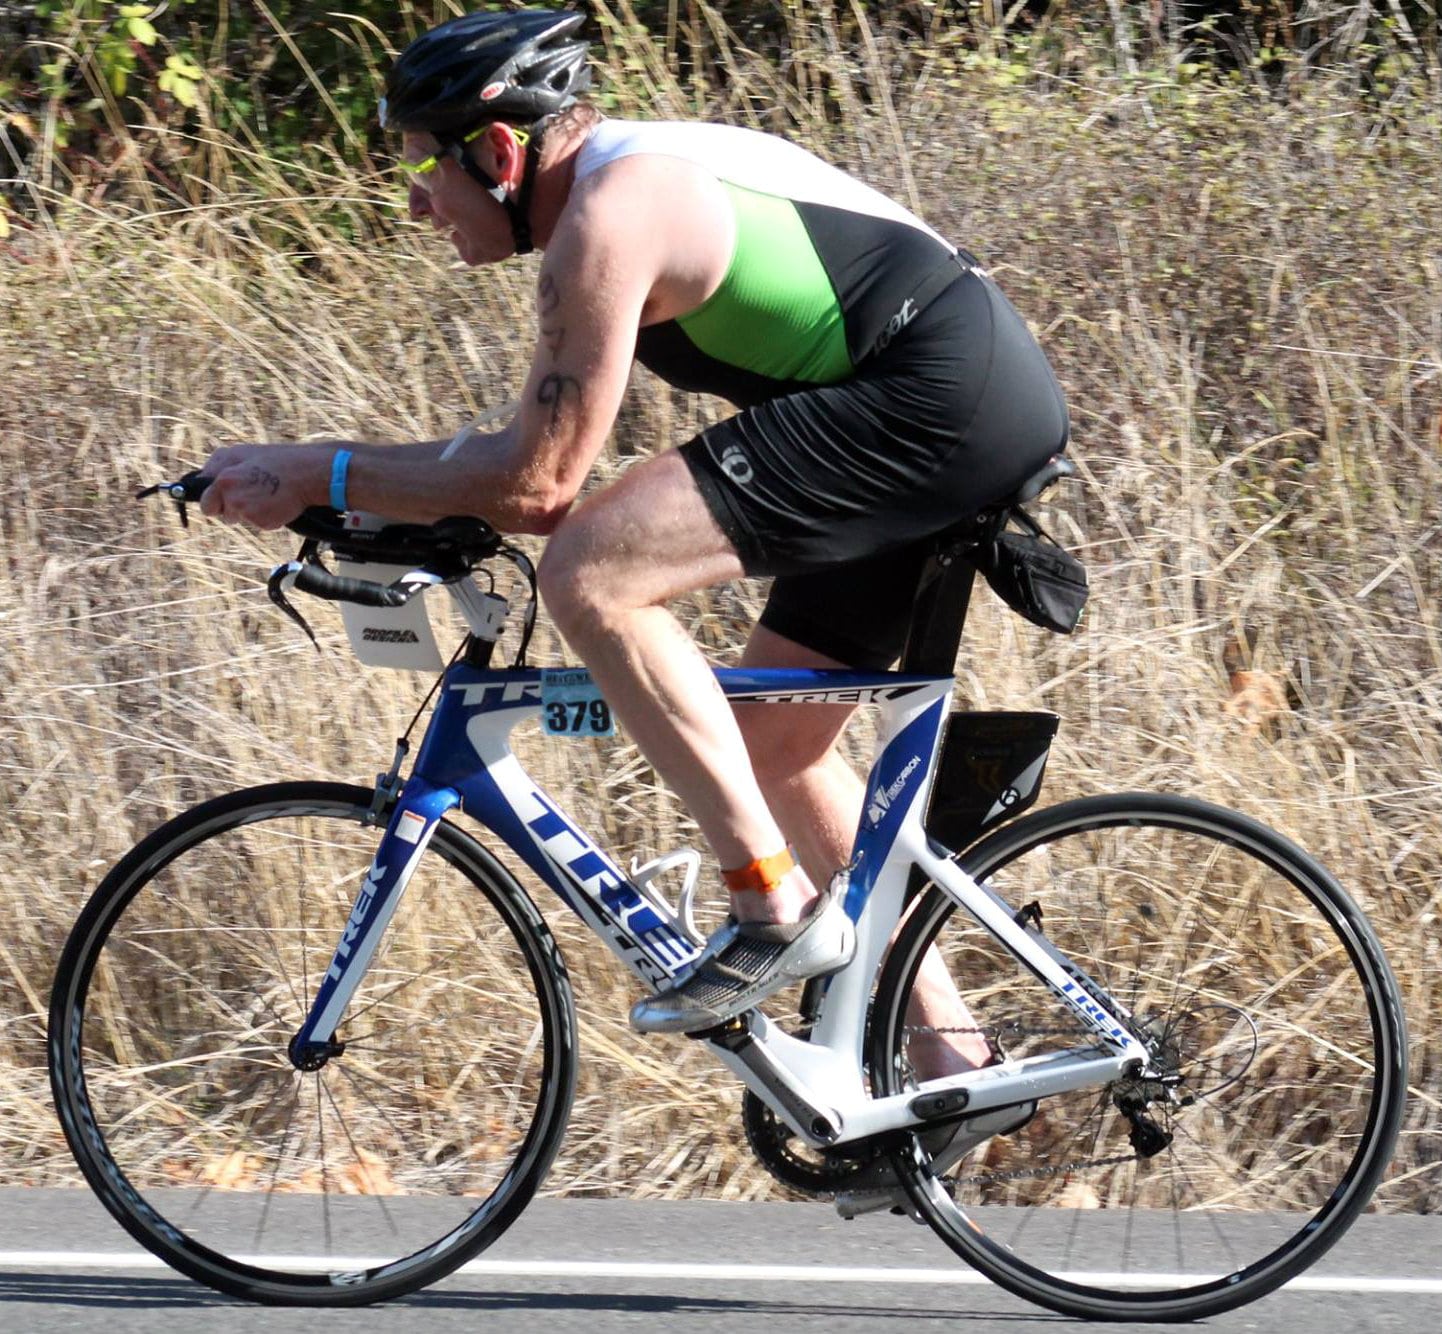 restarting to bike after a crash involves regaining confidence